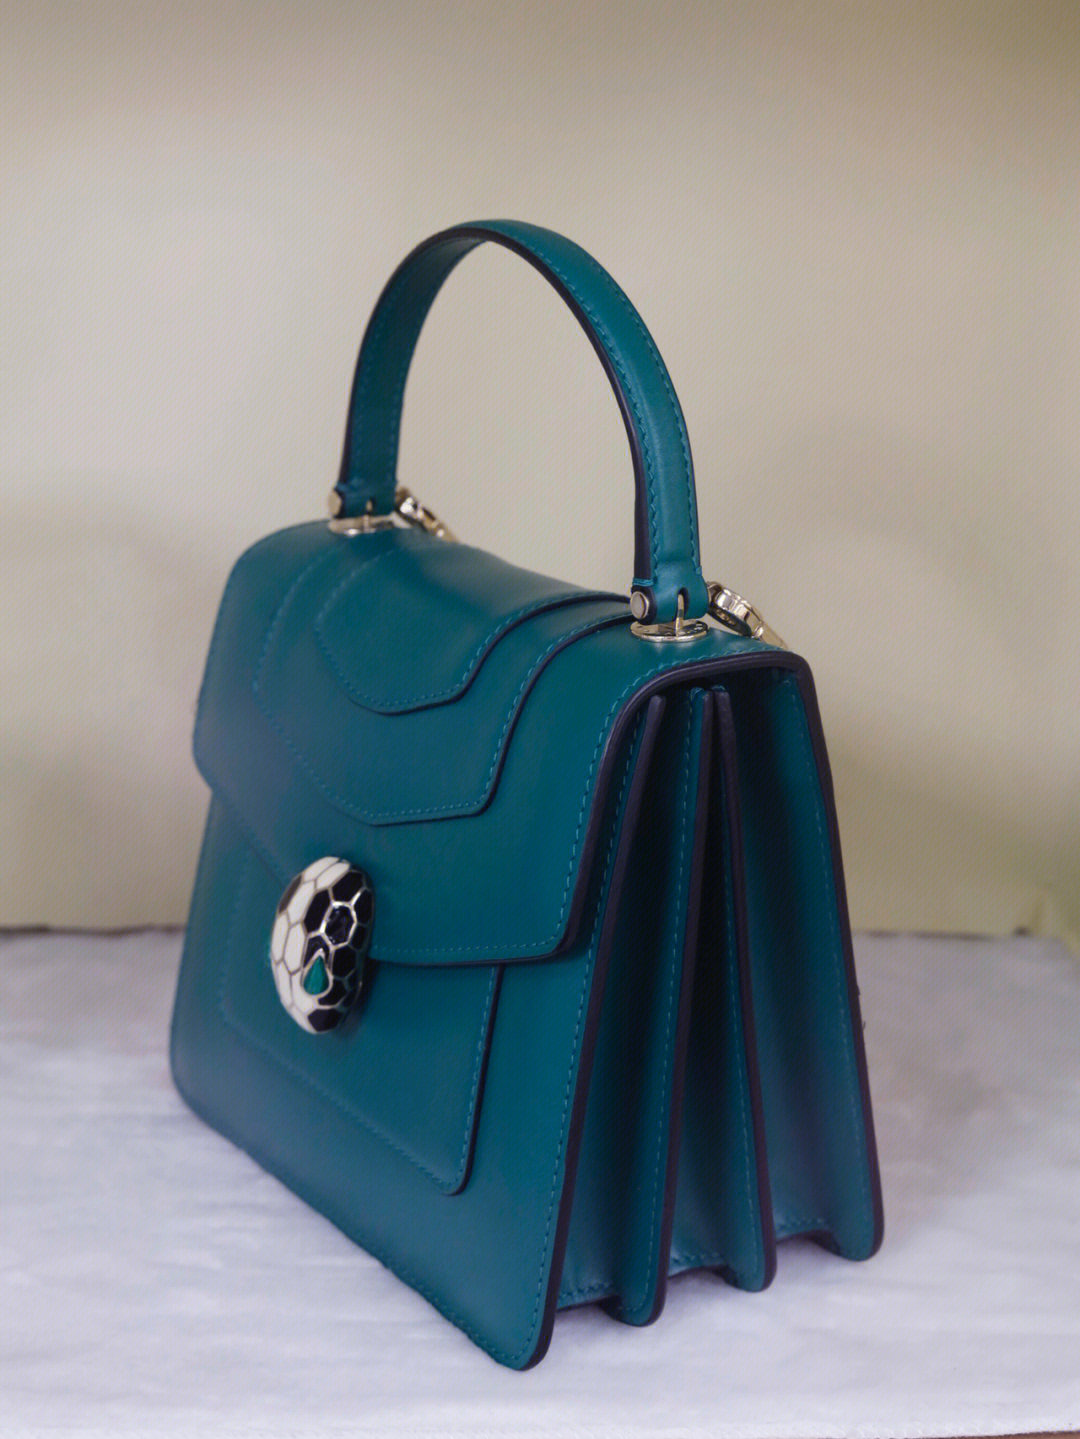 宝格丽家的包包一直是绿色最为经典高级又耐看皮质是硬皮,包包很有型